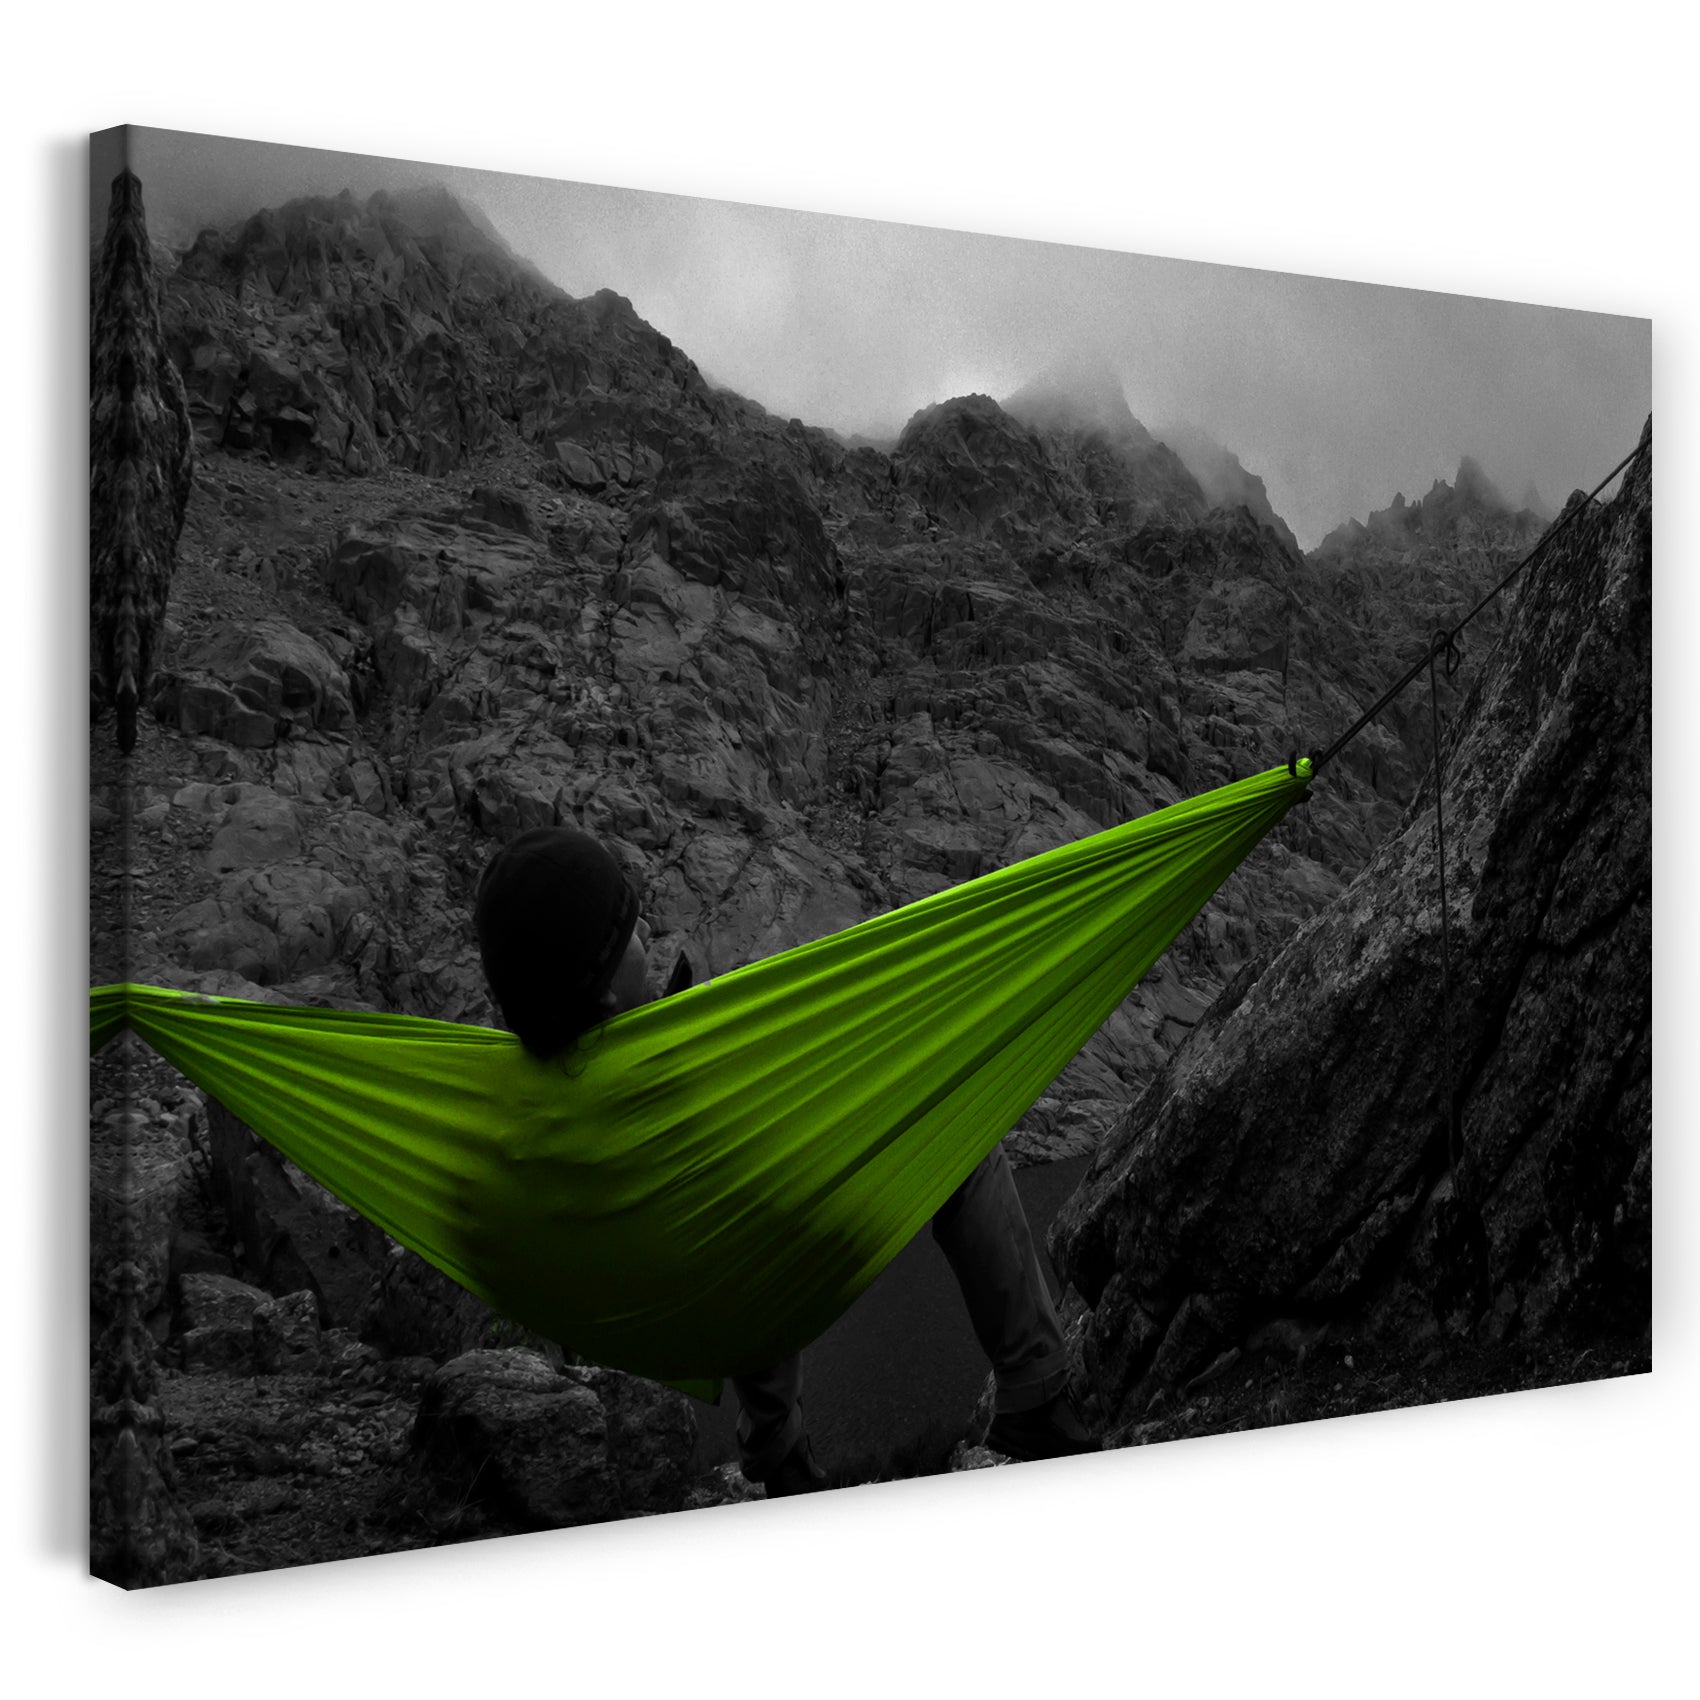 Leinwandbild Frau chillt in Hängematte vor traumhafter Bergkulisse, Nebel Wandbild